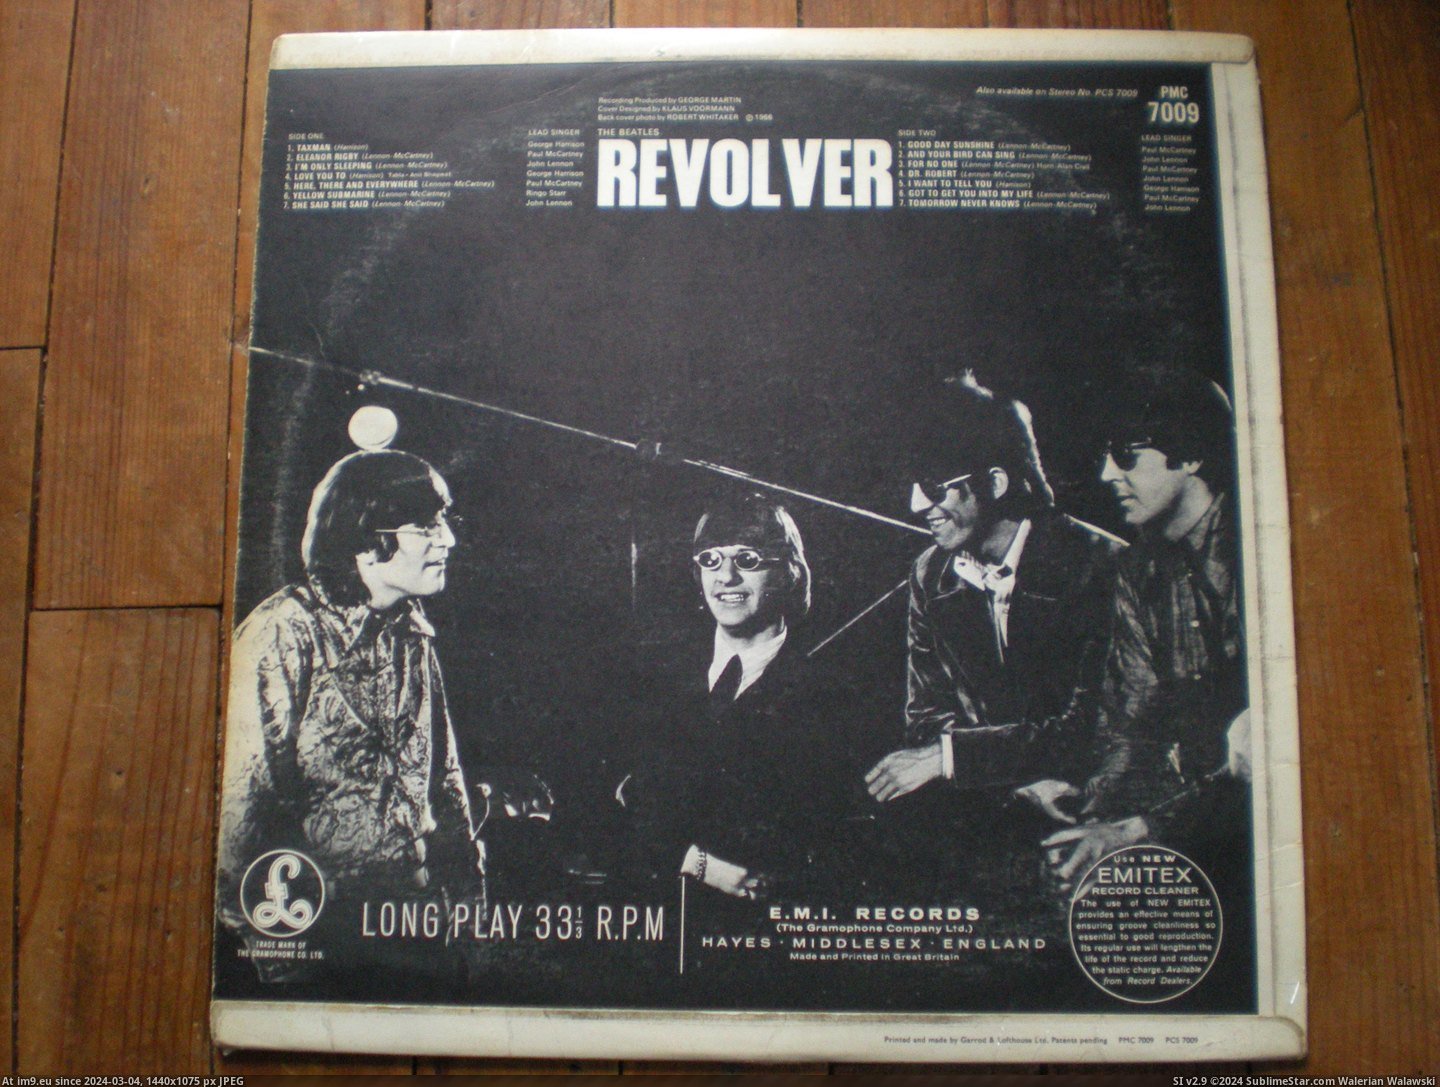  #Revolver  Revolver 17-01-14 6 Pic. (Bild von album new 1))